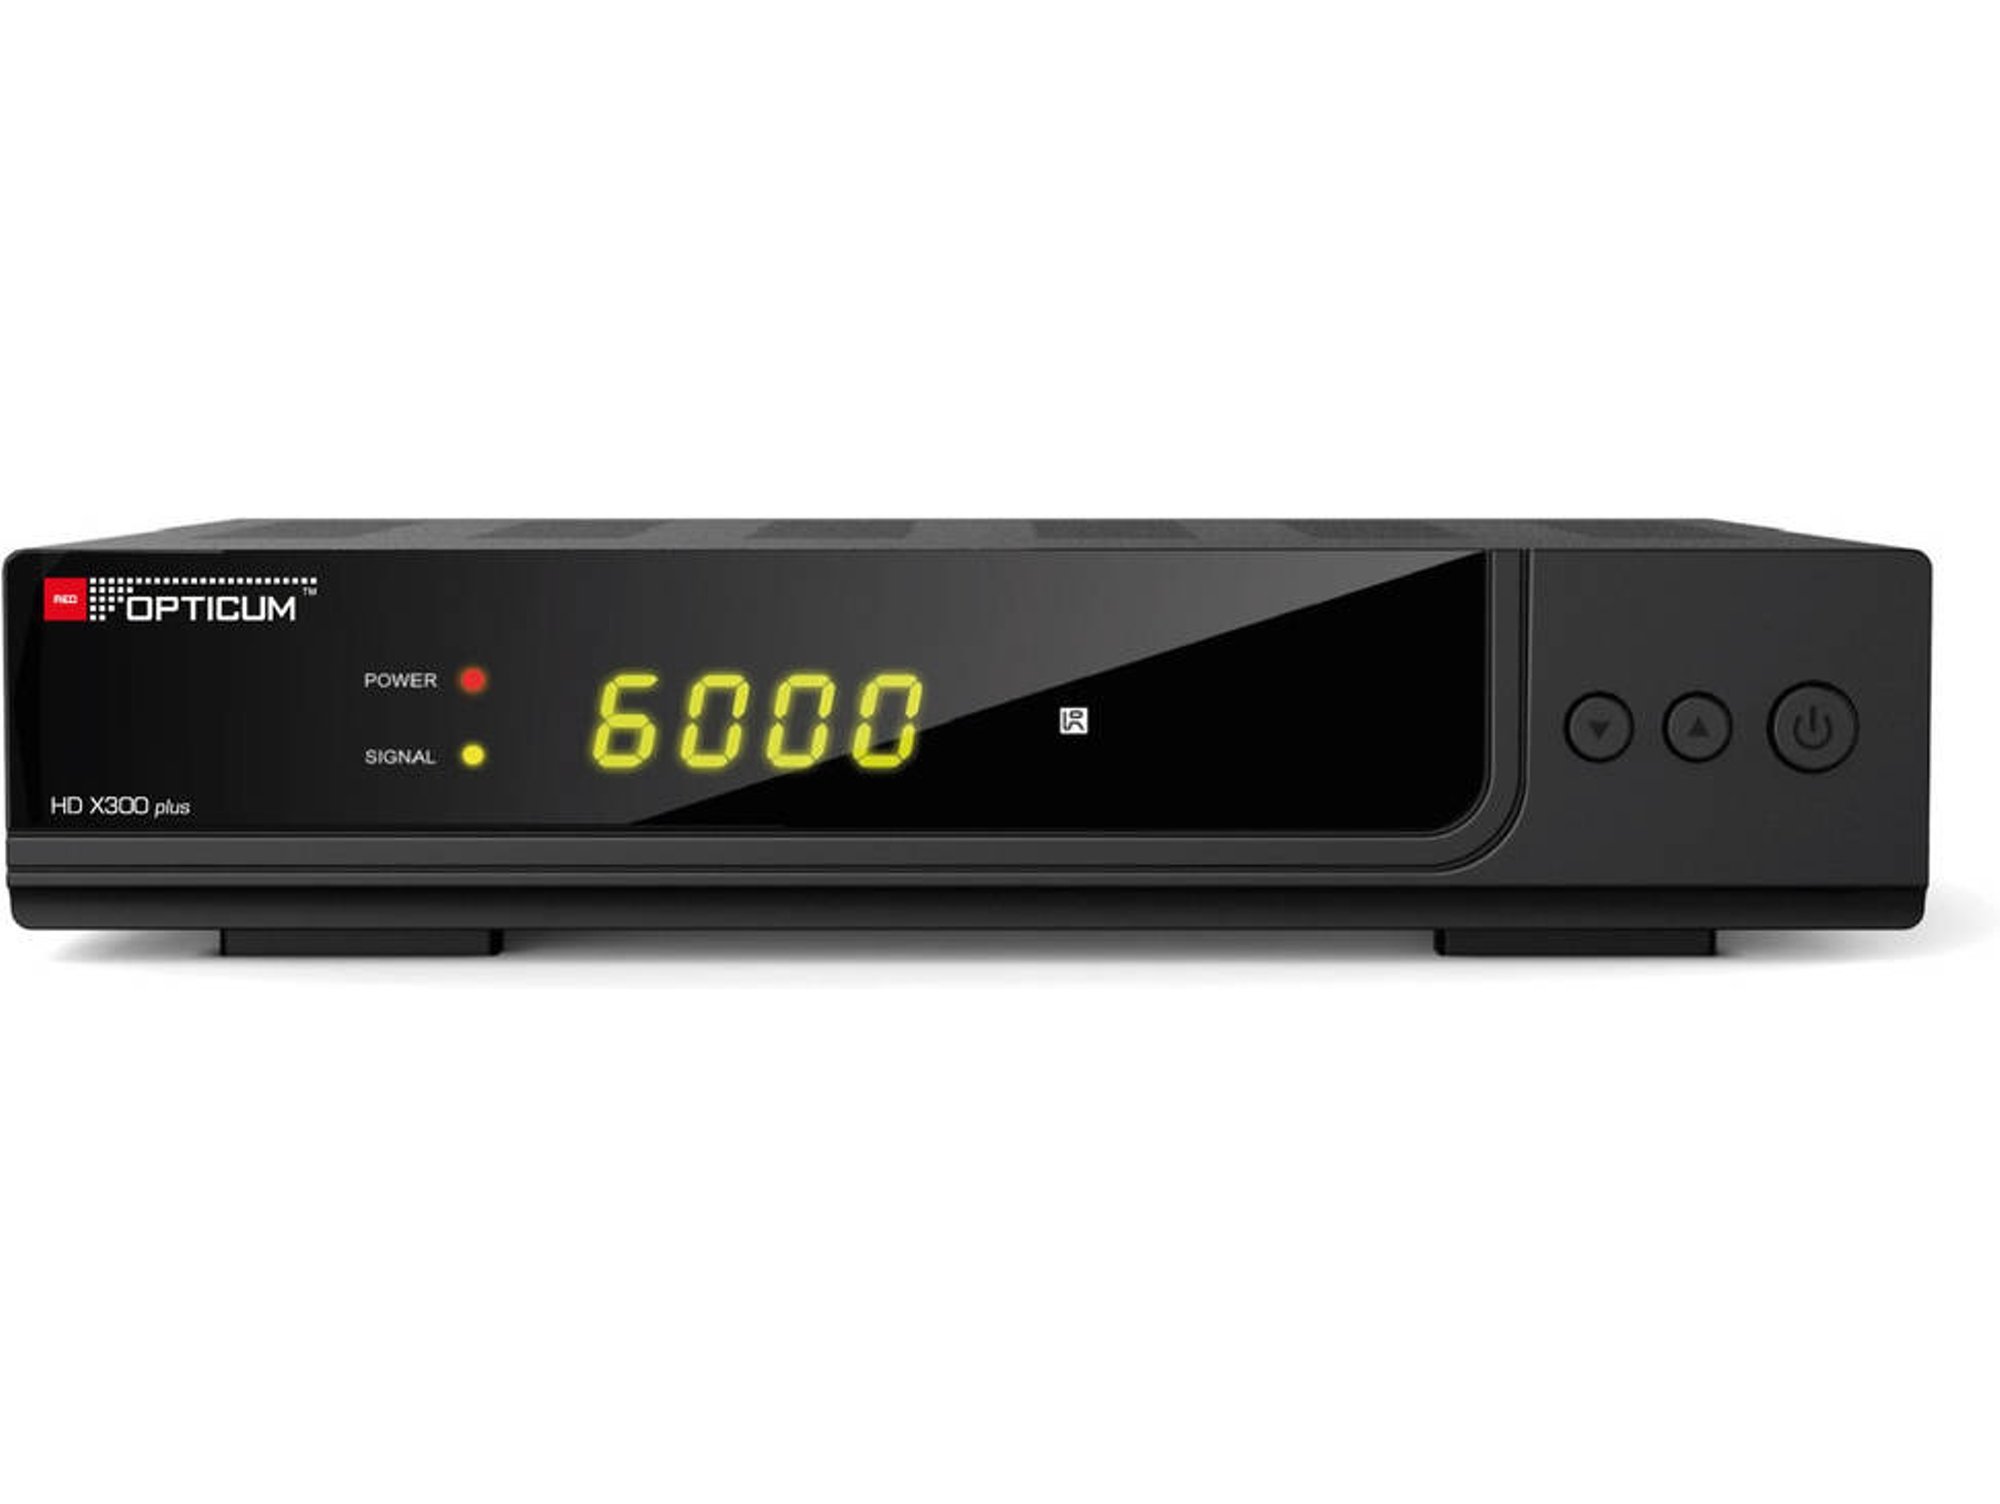 Receptor TV OPTICUM HD X300 Plus